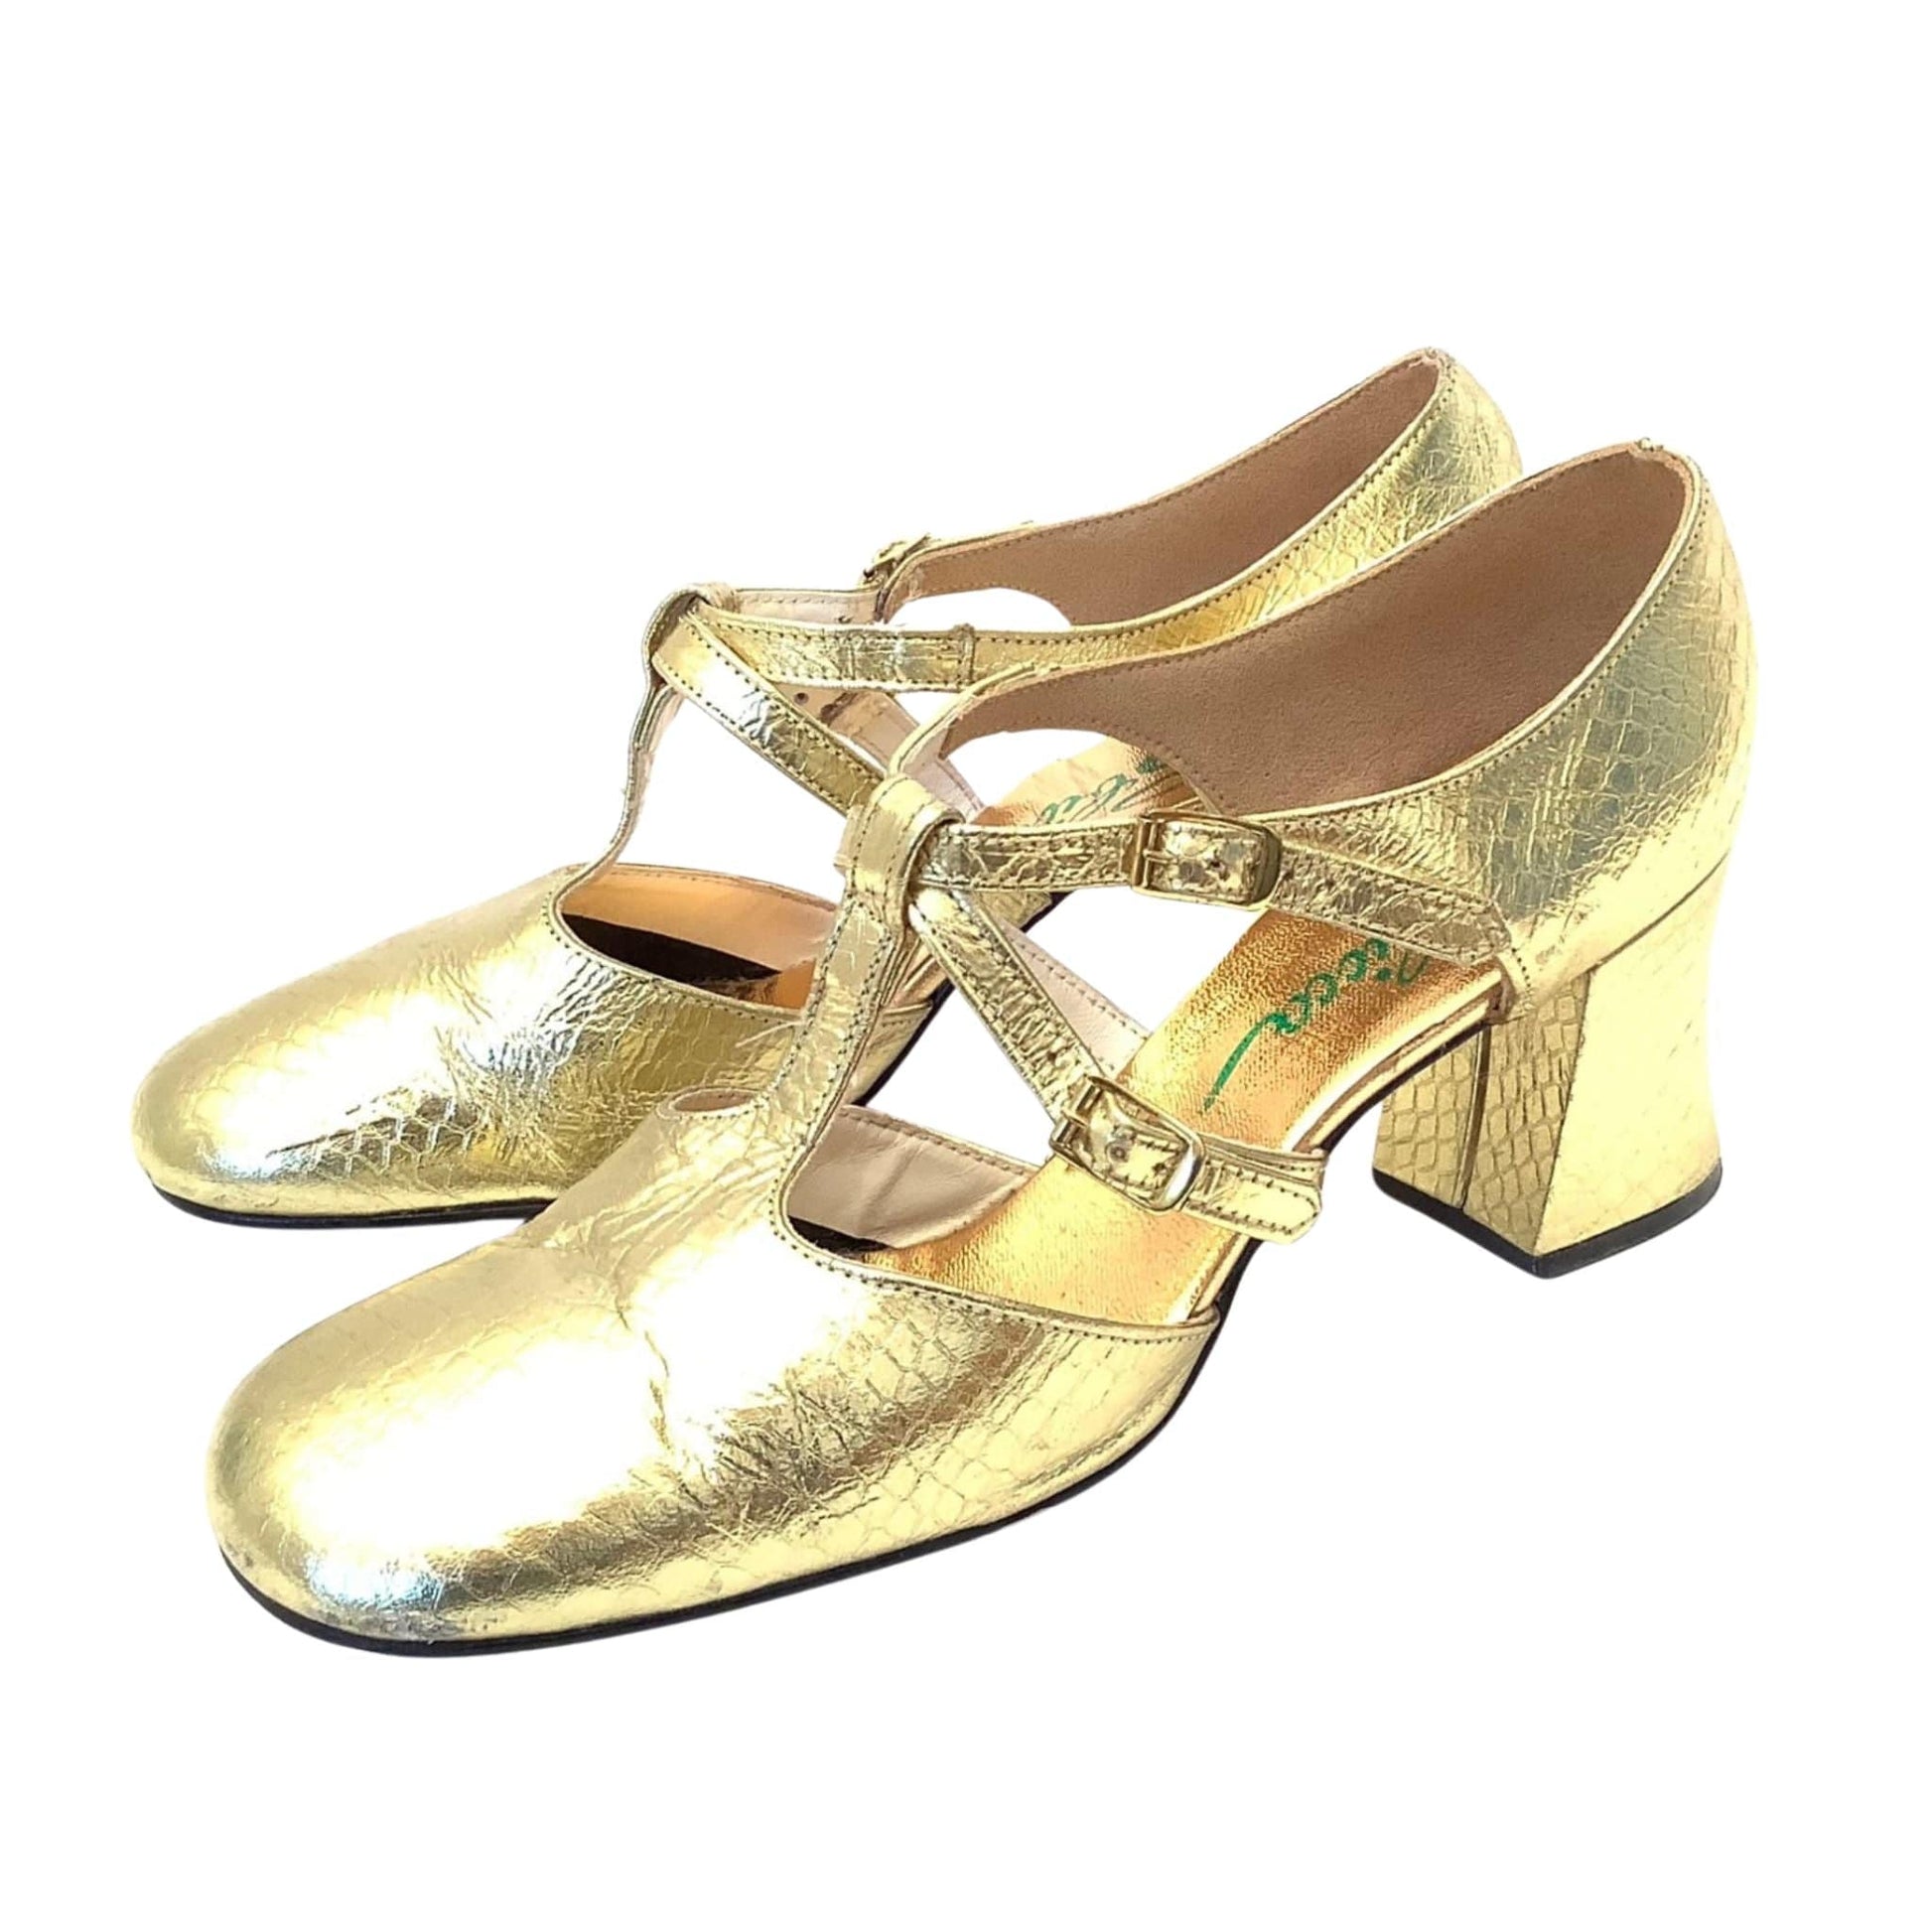 Sbicca Gold 1960s Heels 10.5 / Gold / Mod